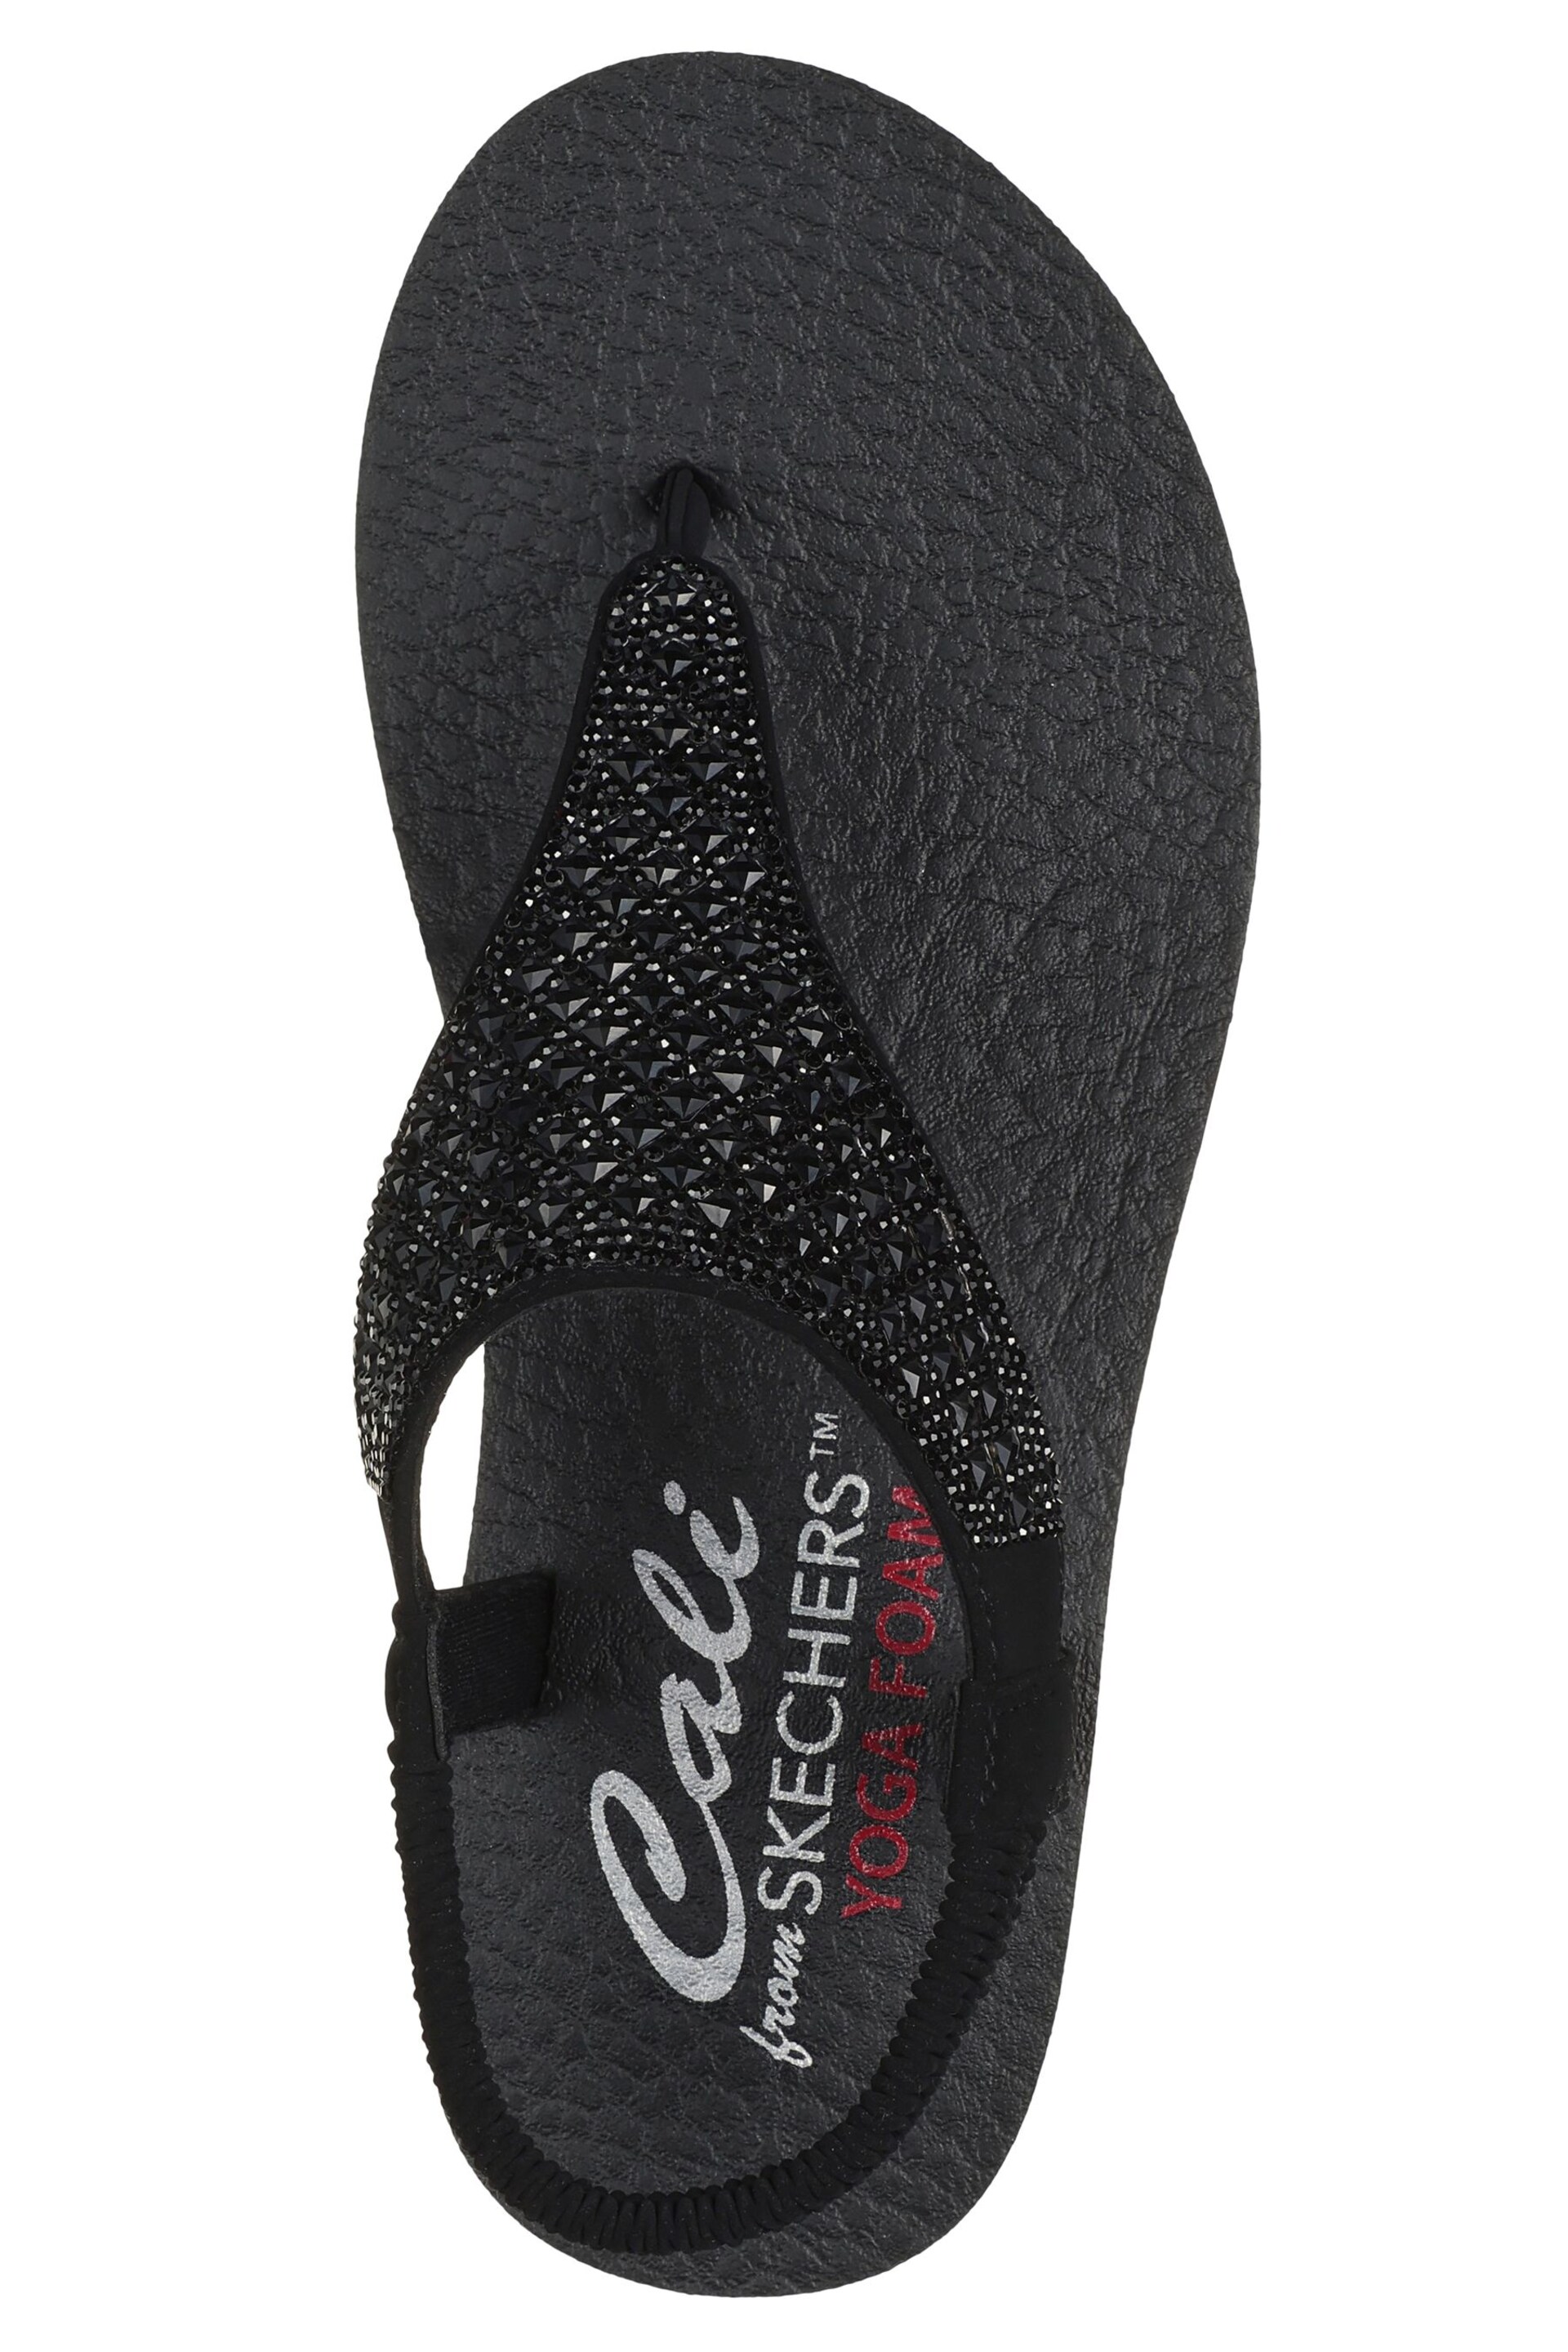 Skechers Black Meditation Rockstar Sandals - Image 4 of 5